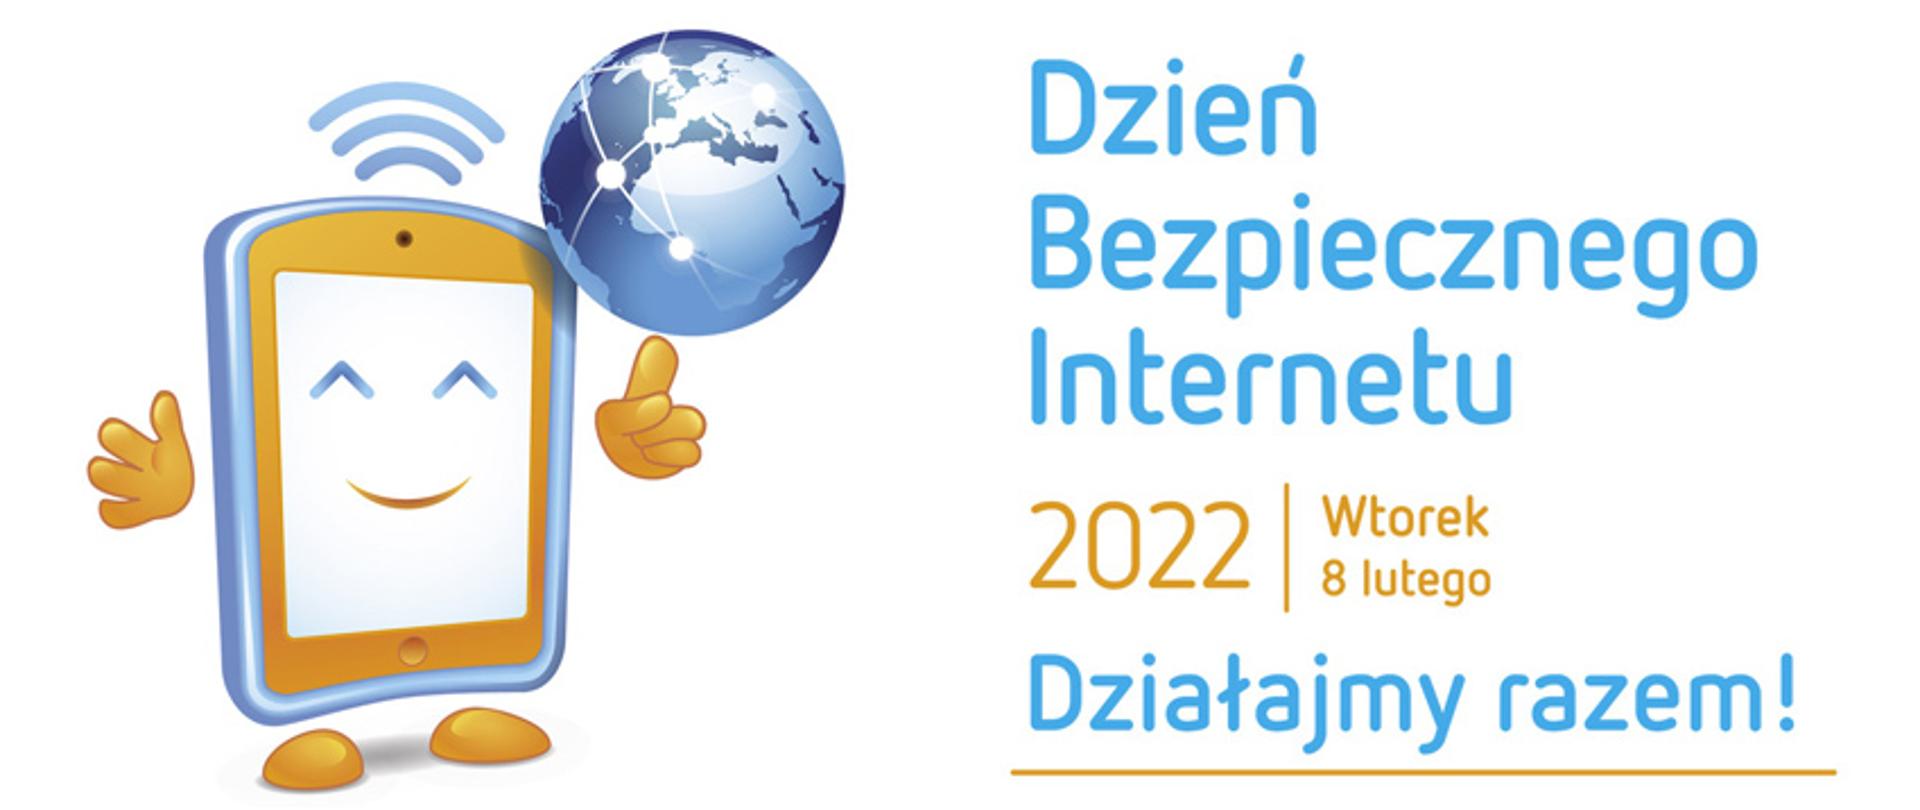 logo Dnia Bezpiecznego Internetu 2022. Po lewej stronie ukazany telefon i kula ziemska, po prawej napis ' Dzień Bezpiecznego Internetu 2022. Wtorek 8 lutego. Działajmy razem!"